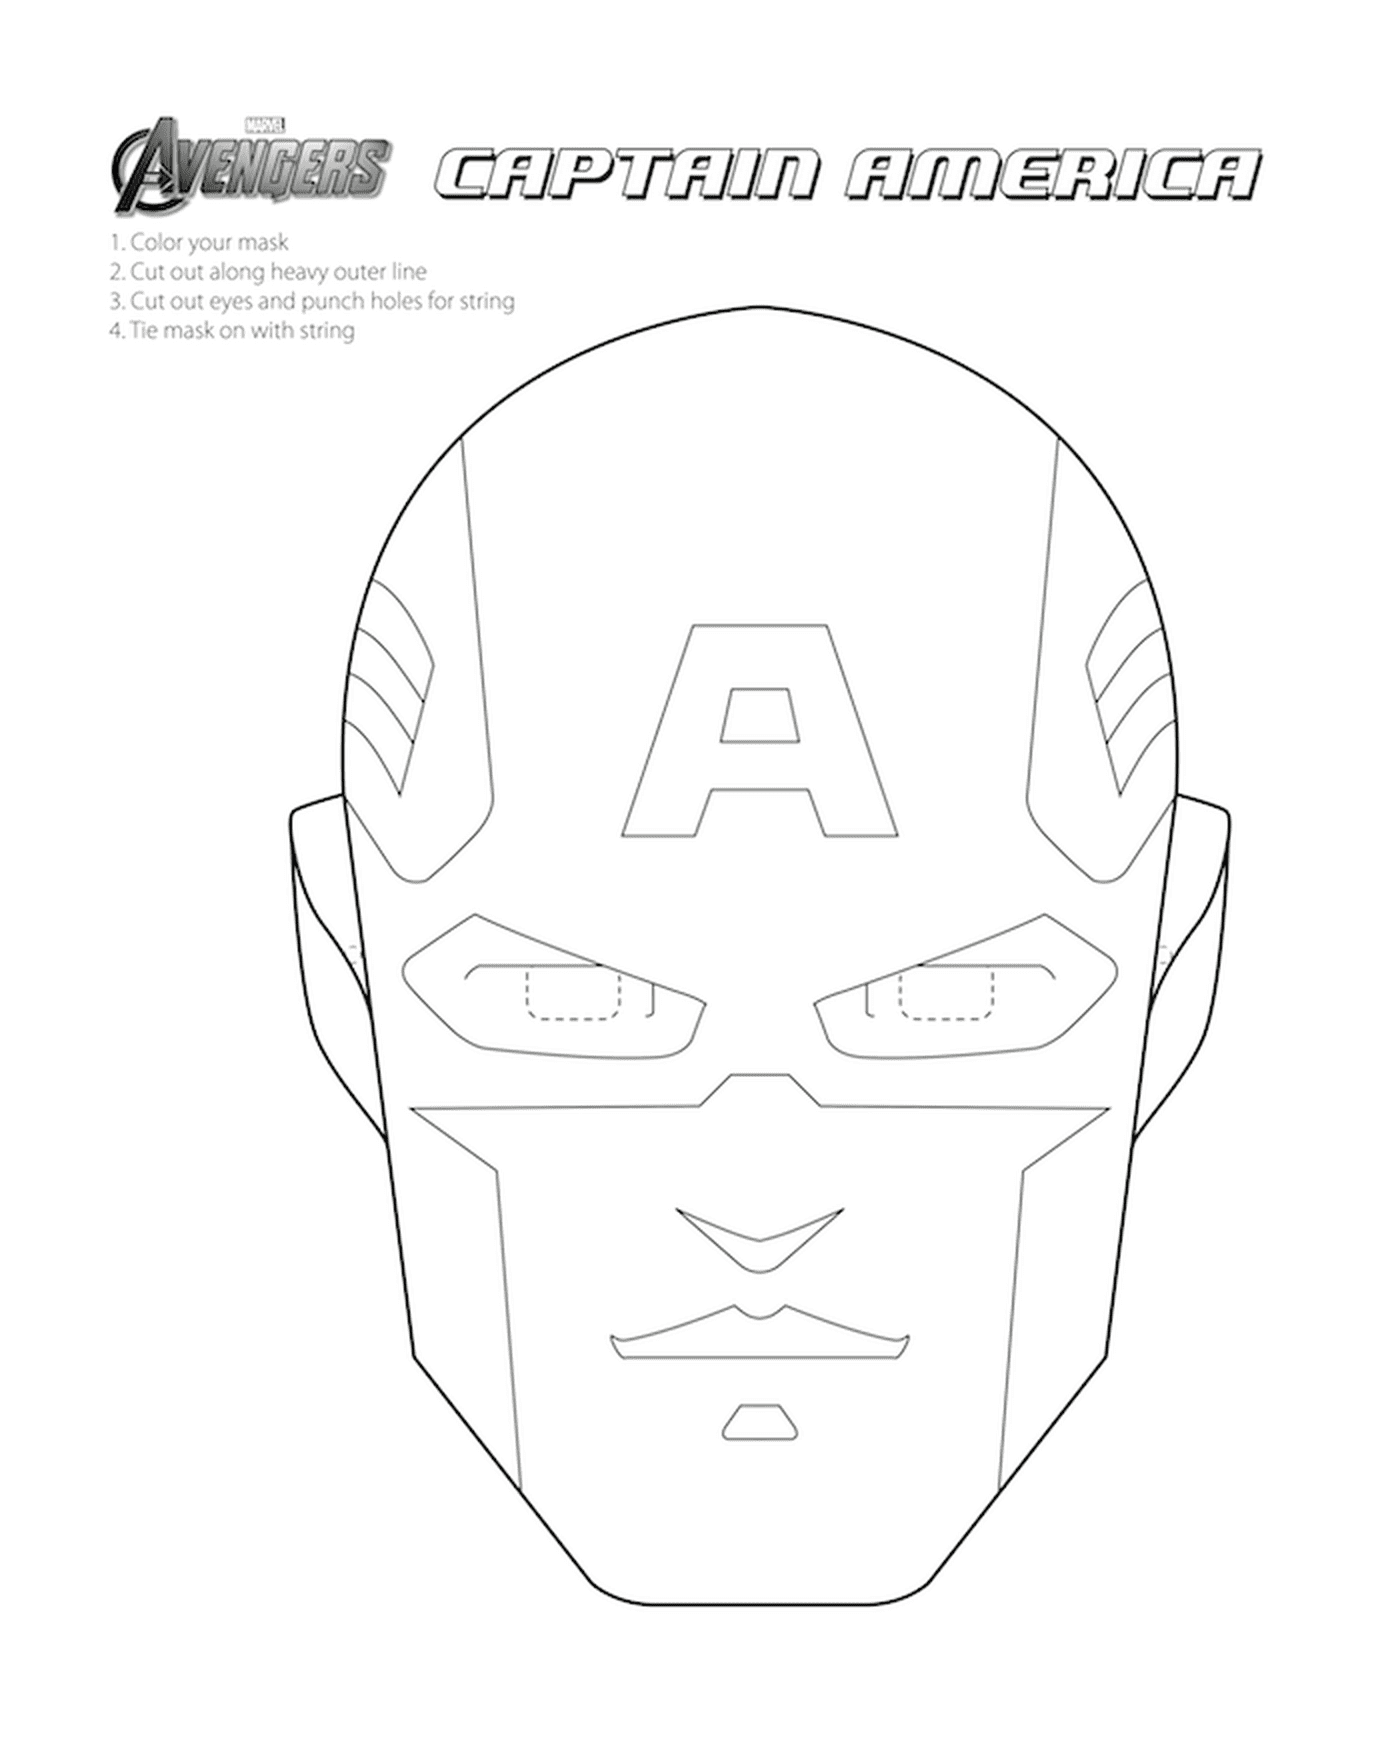  Una maschera da Captain America 